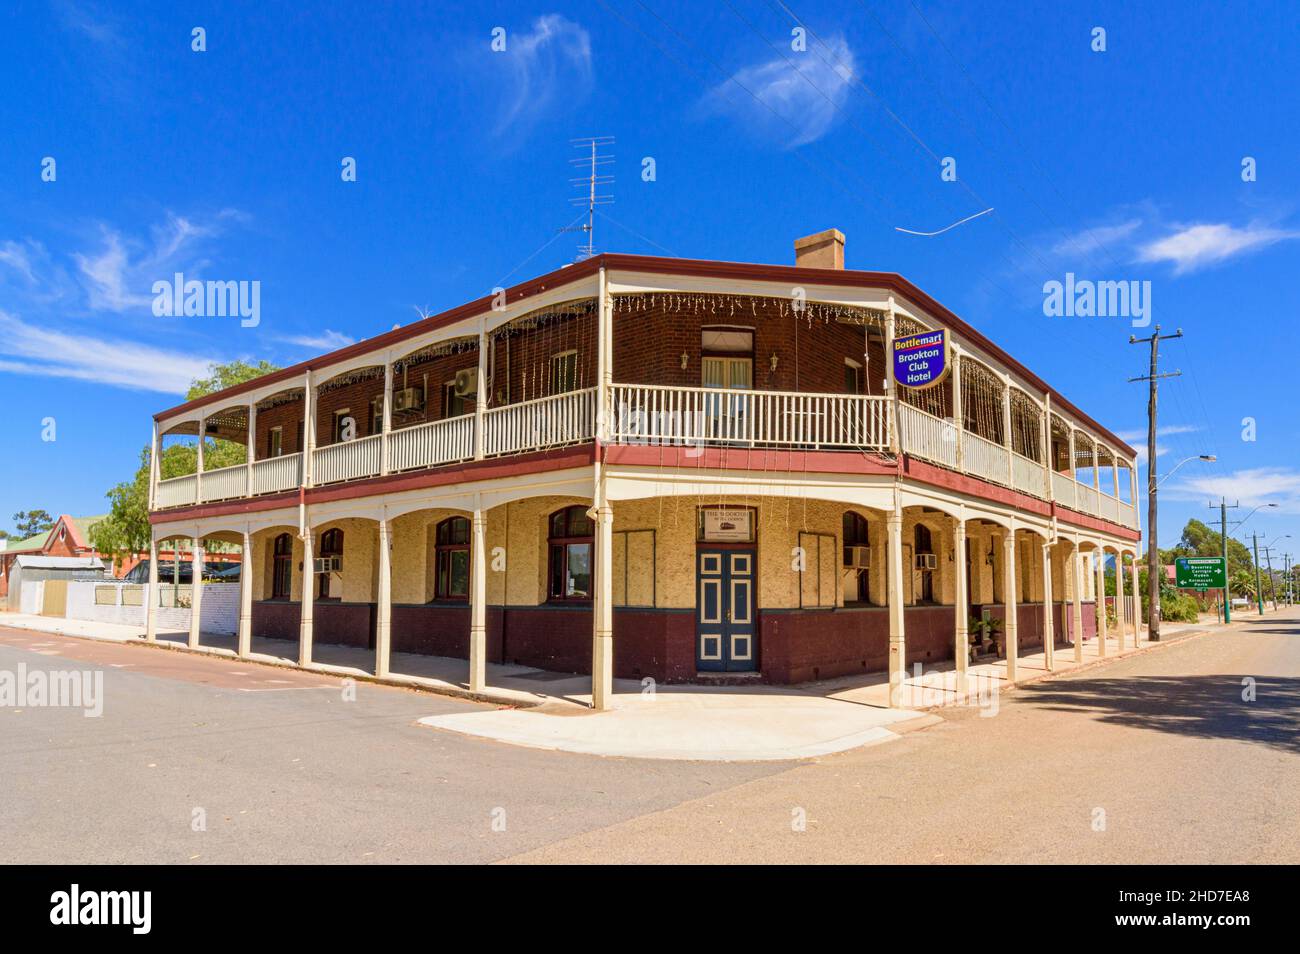 Der berühmte Country Pub, das Brookton Club Hotel, mit seinen schattigen Verandas und den Balustraden in den oberen Stockwerken in Brookton, Western Australia, Australien Stockfoto